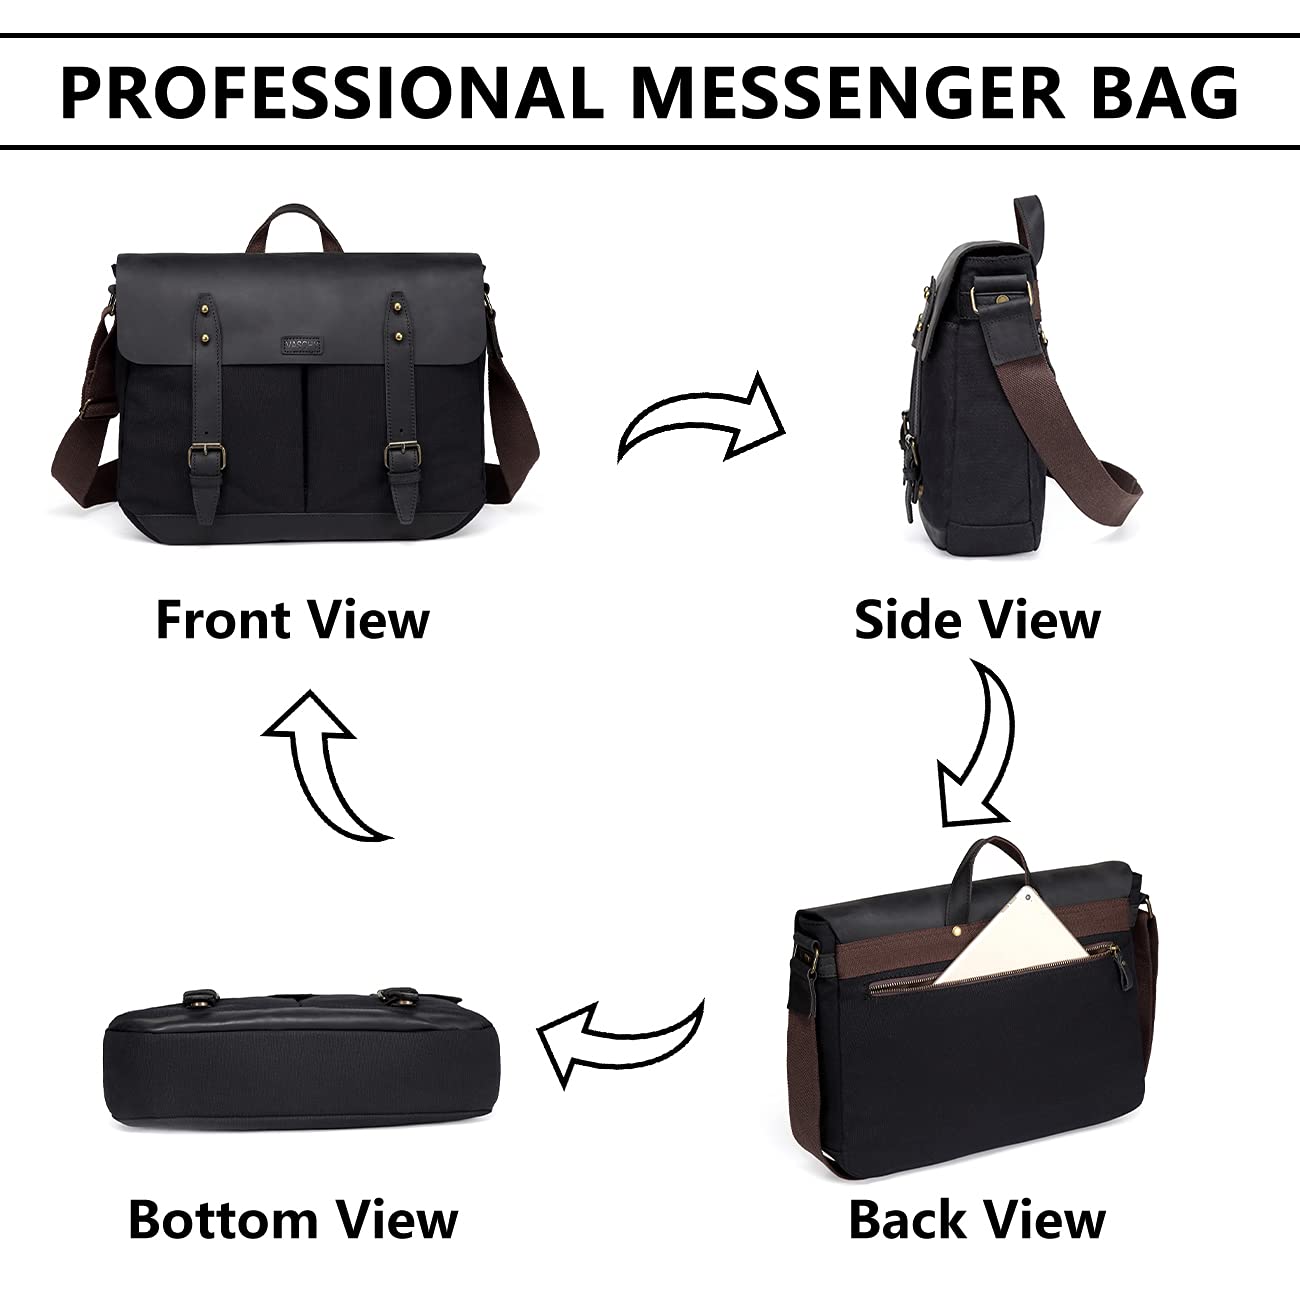 VASCHY Black Leather Canvas Messenger Bag for Men, Vintage Satchel 15.6 inch Laptop Business Briefcase Shoulder Bag with Top Lift Handle